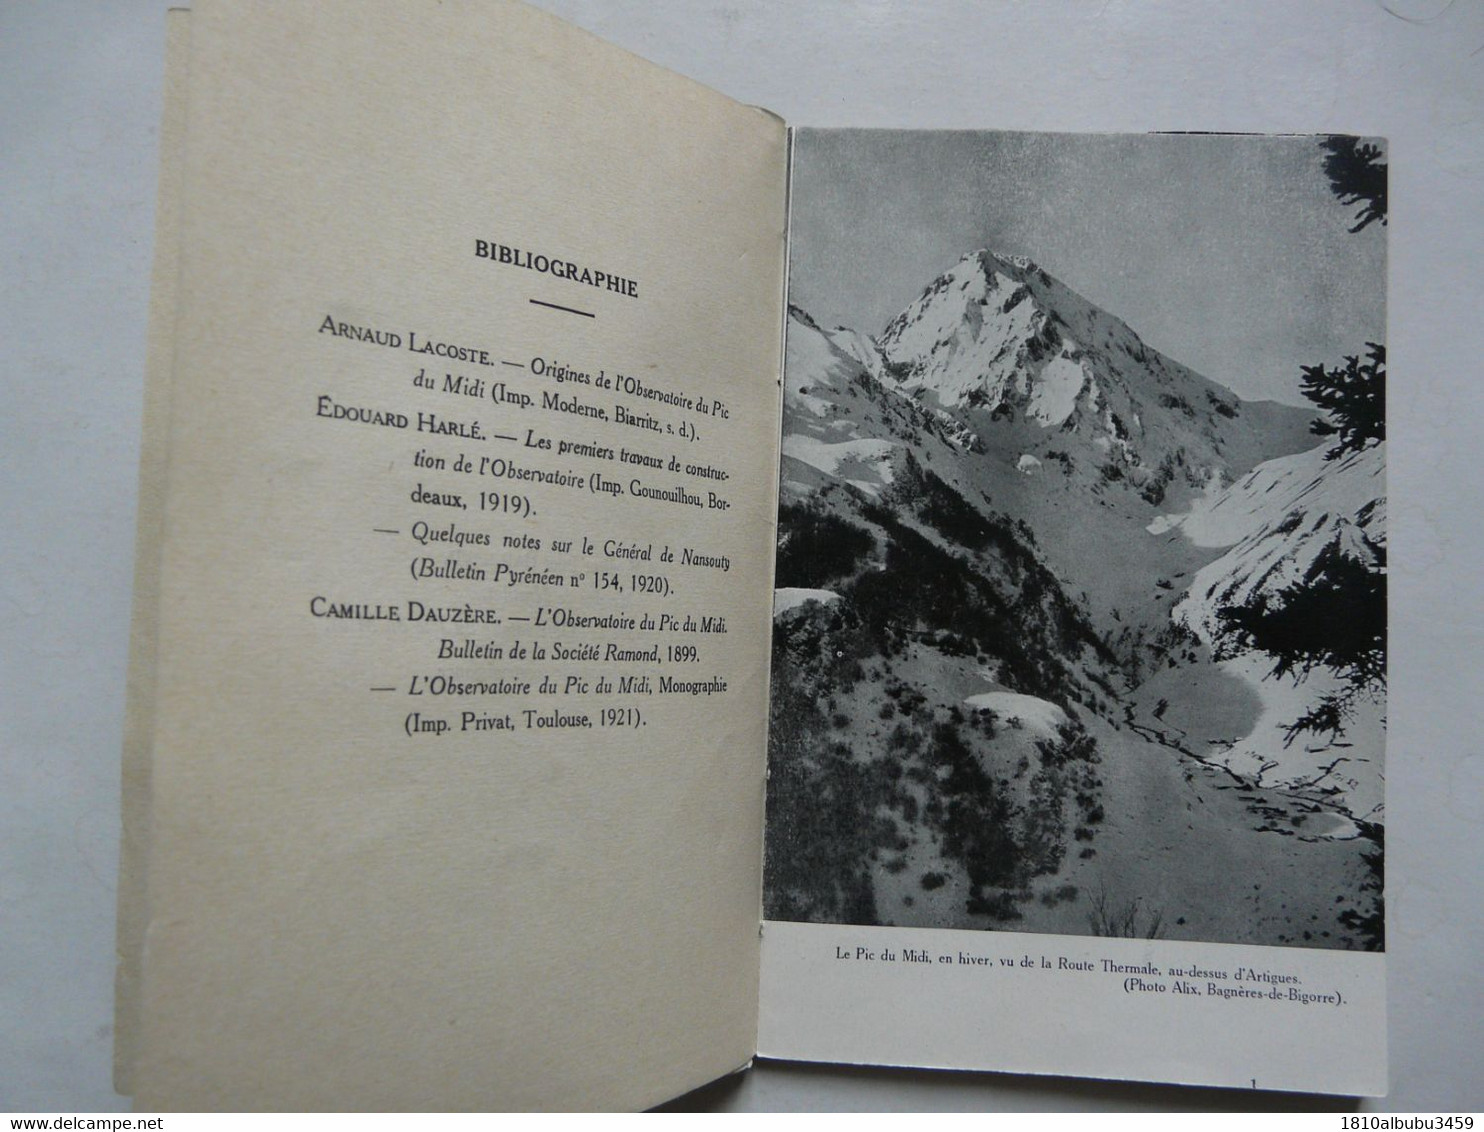 L'OBSERVATOIRE DU PIC DU MIDI (48 pages) - LES EDITIONS PYRENEENNES 1954